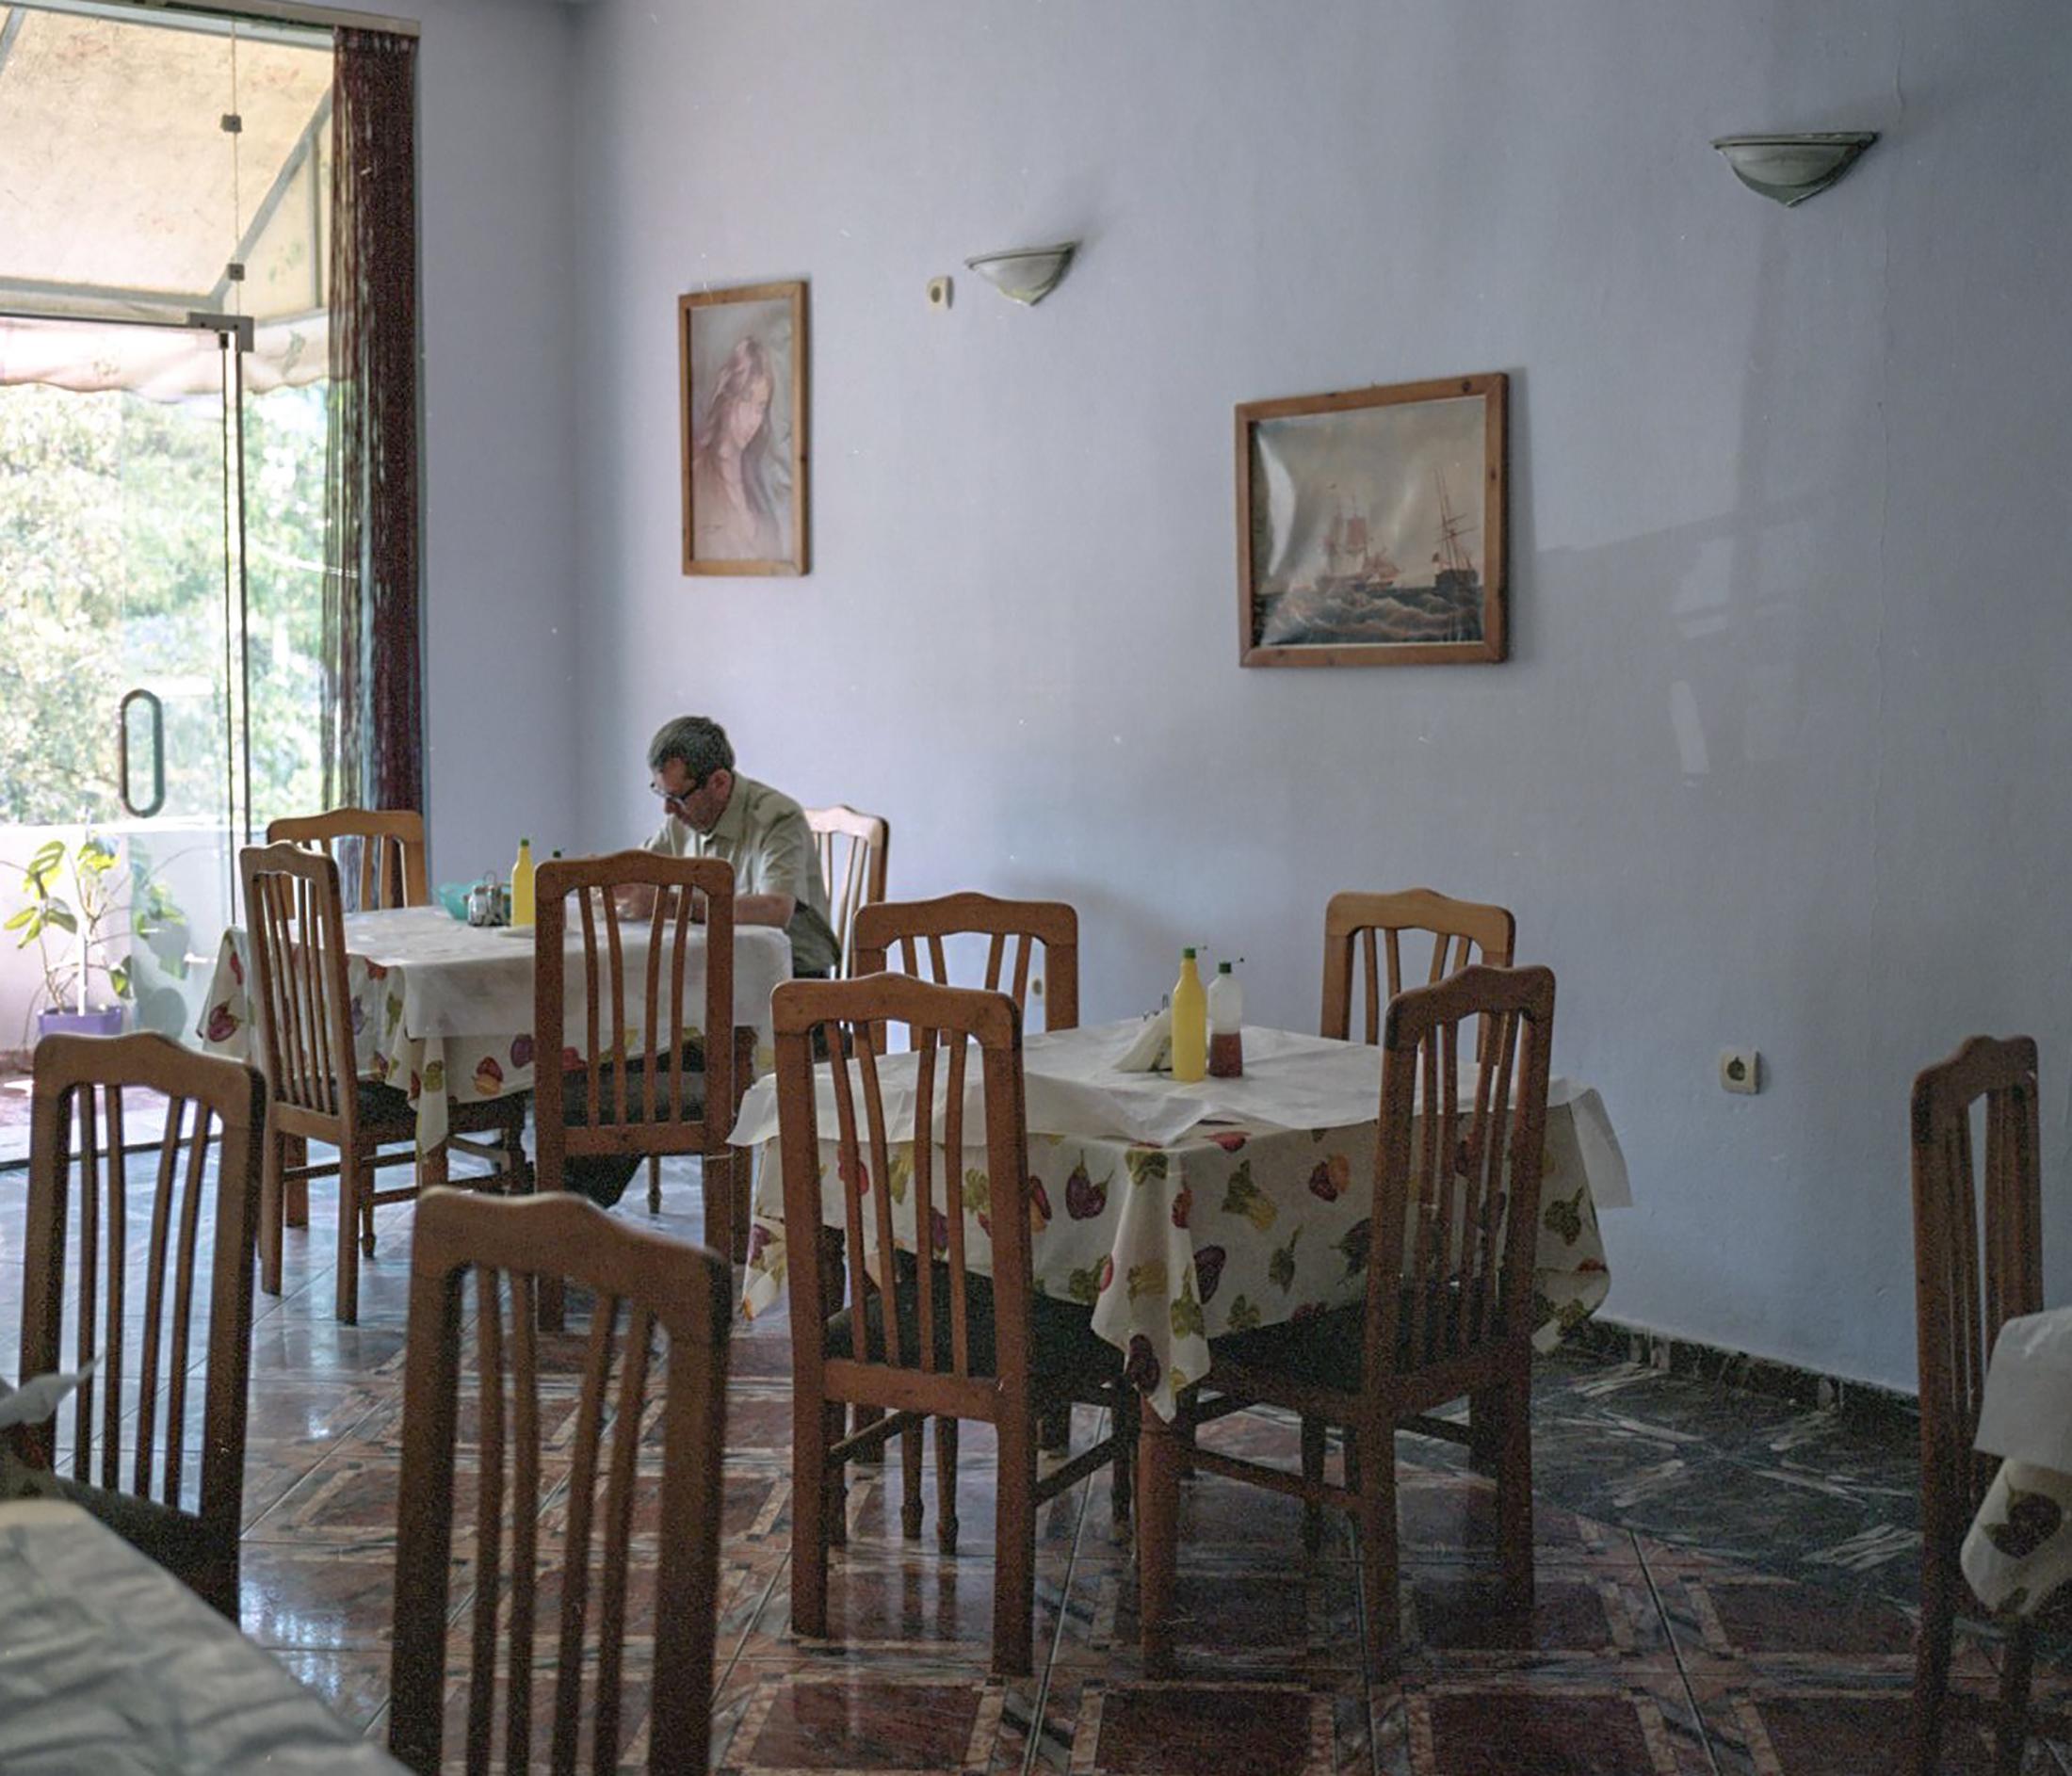 Area Albania - Gjelltore. A popular restaurant in Ballsh, adjacent to a...